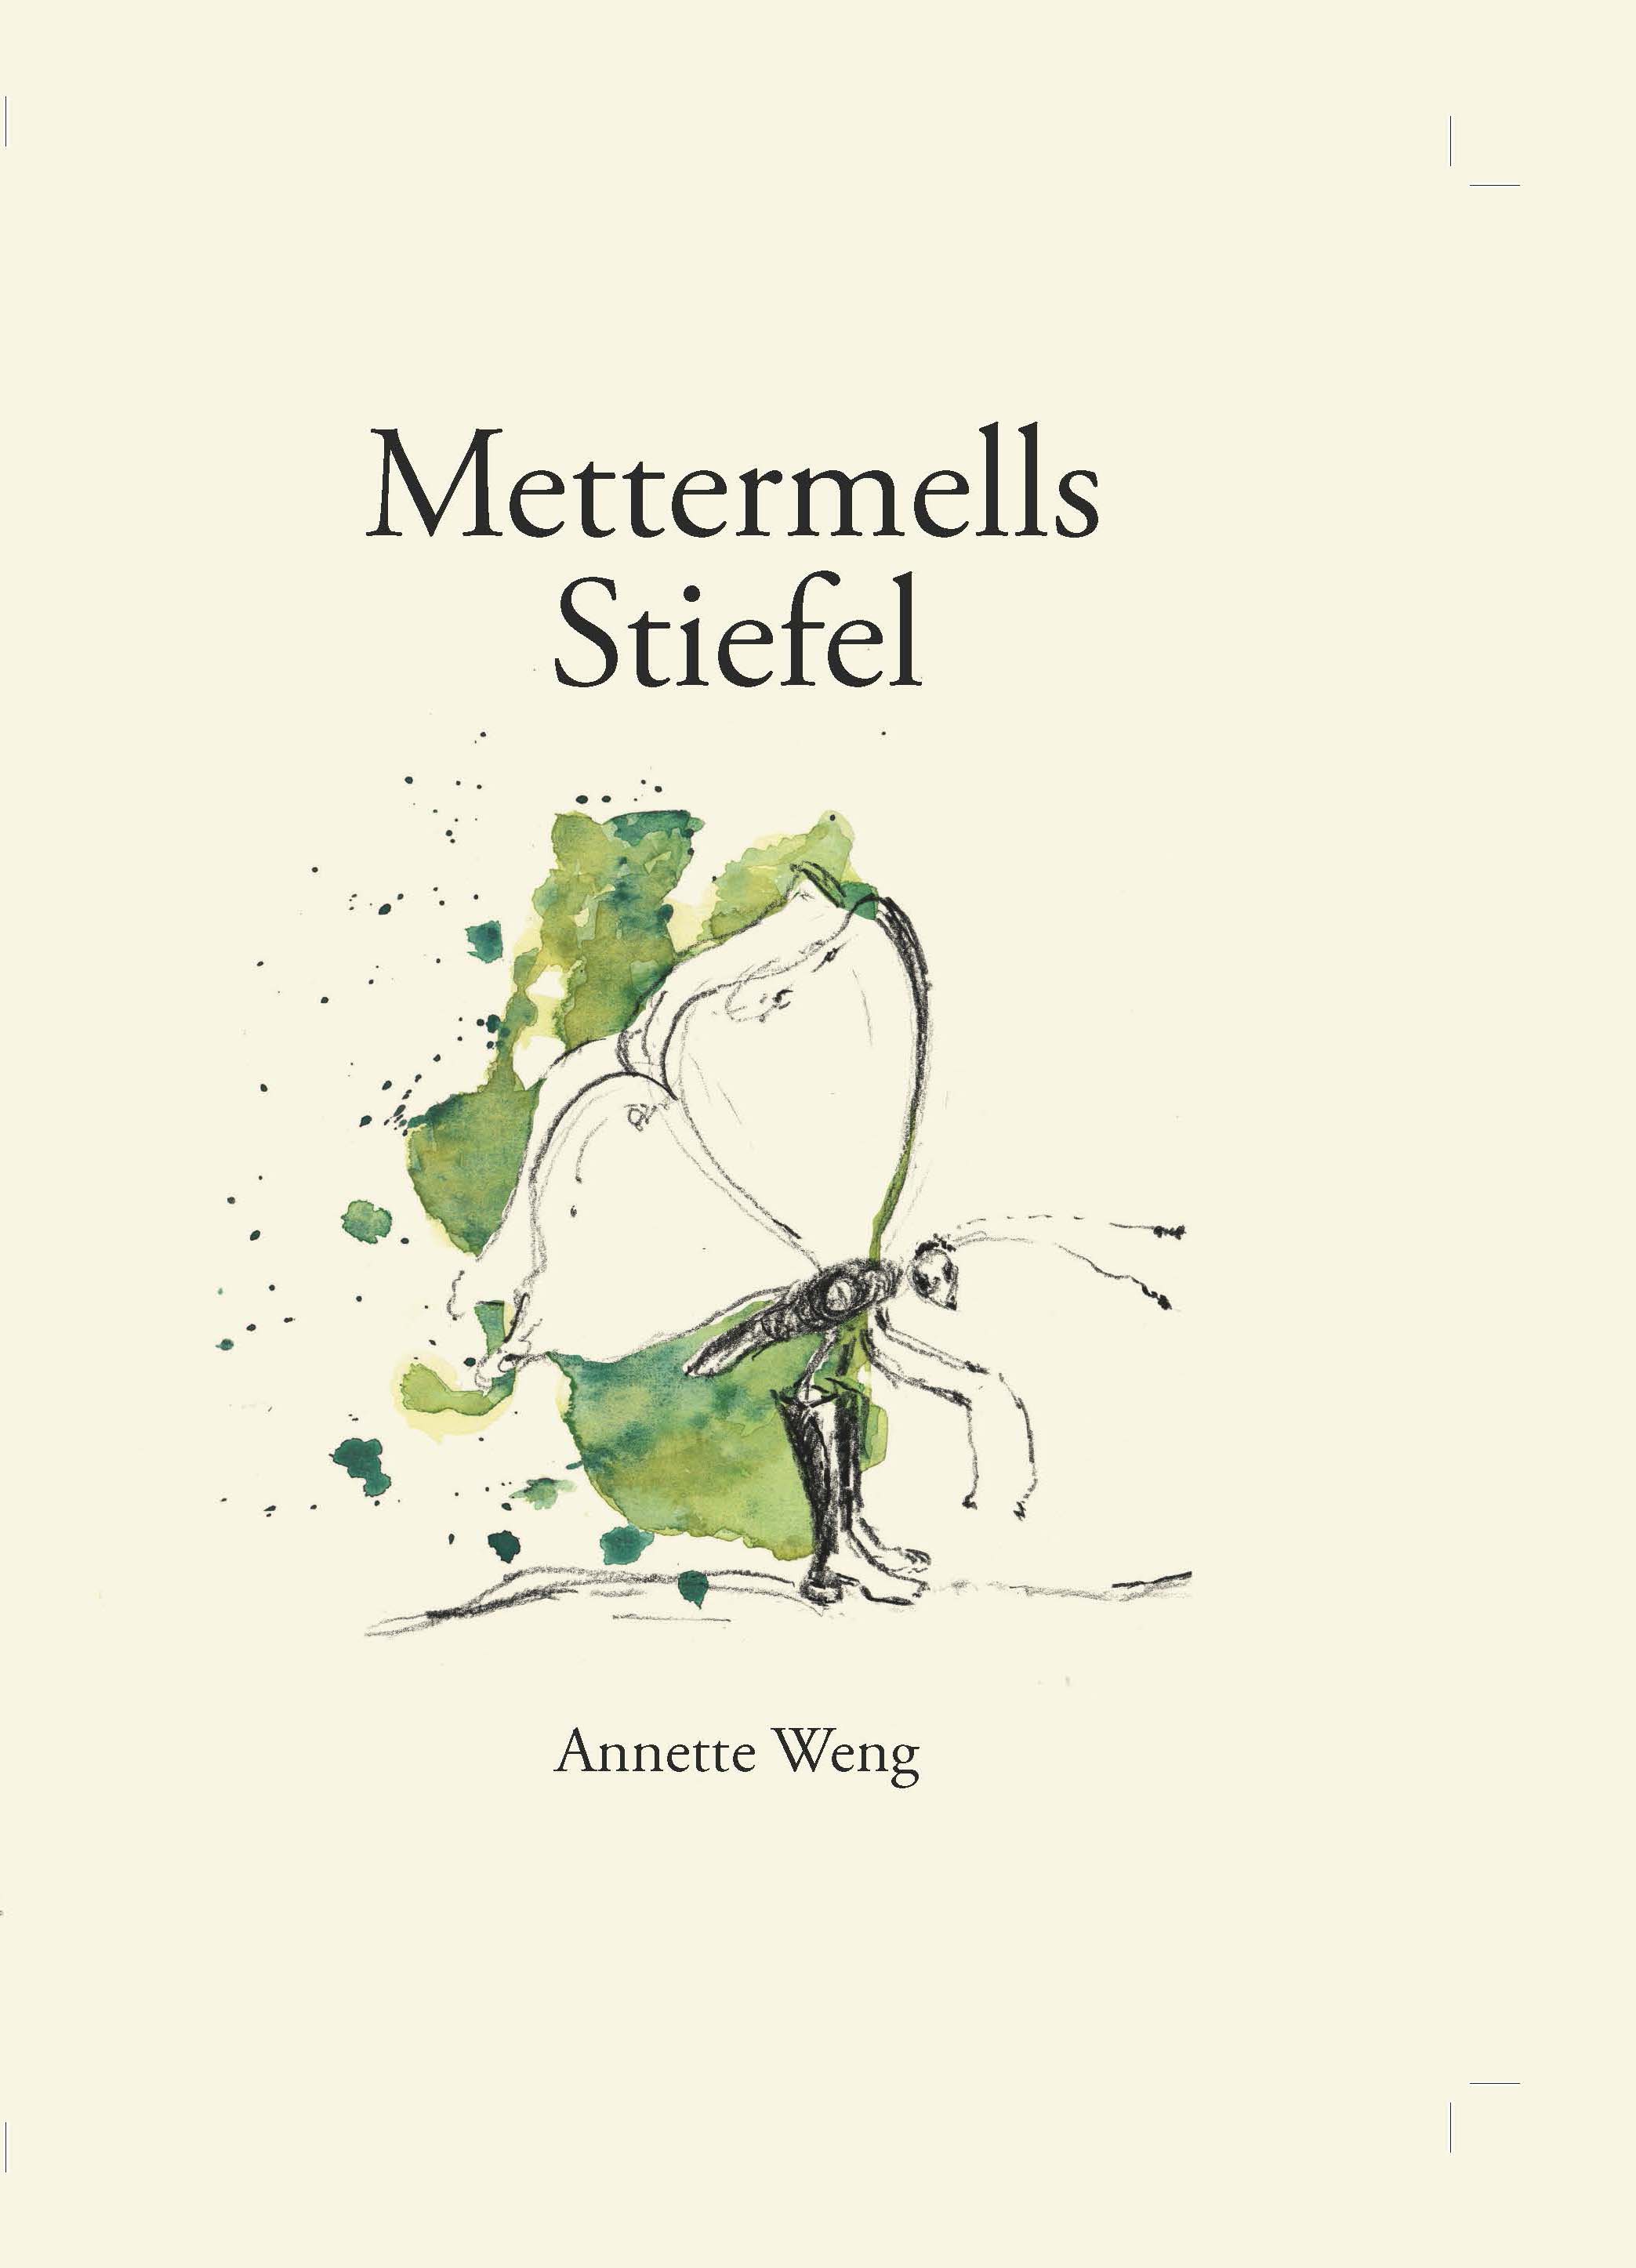 Mettermells Stiefel von Annette Weg